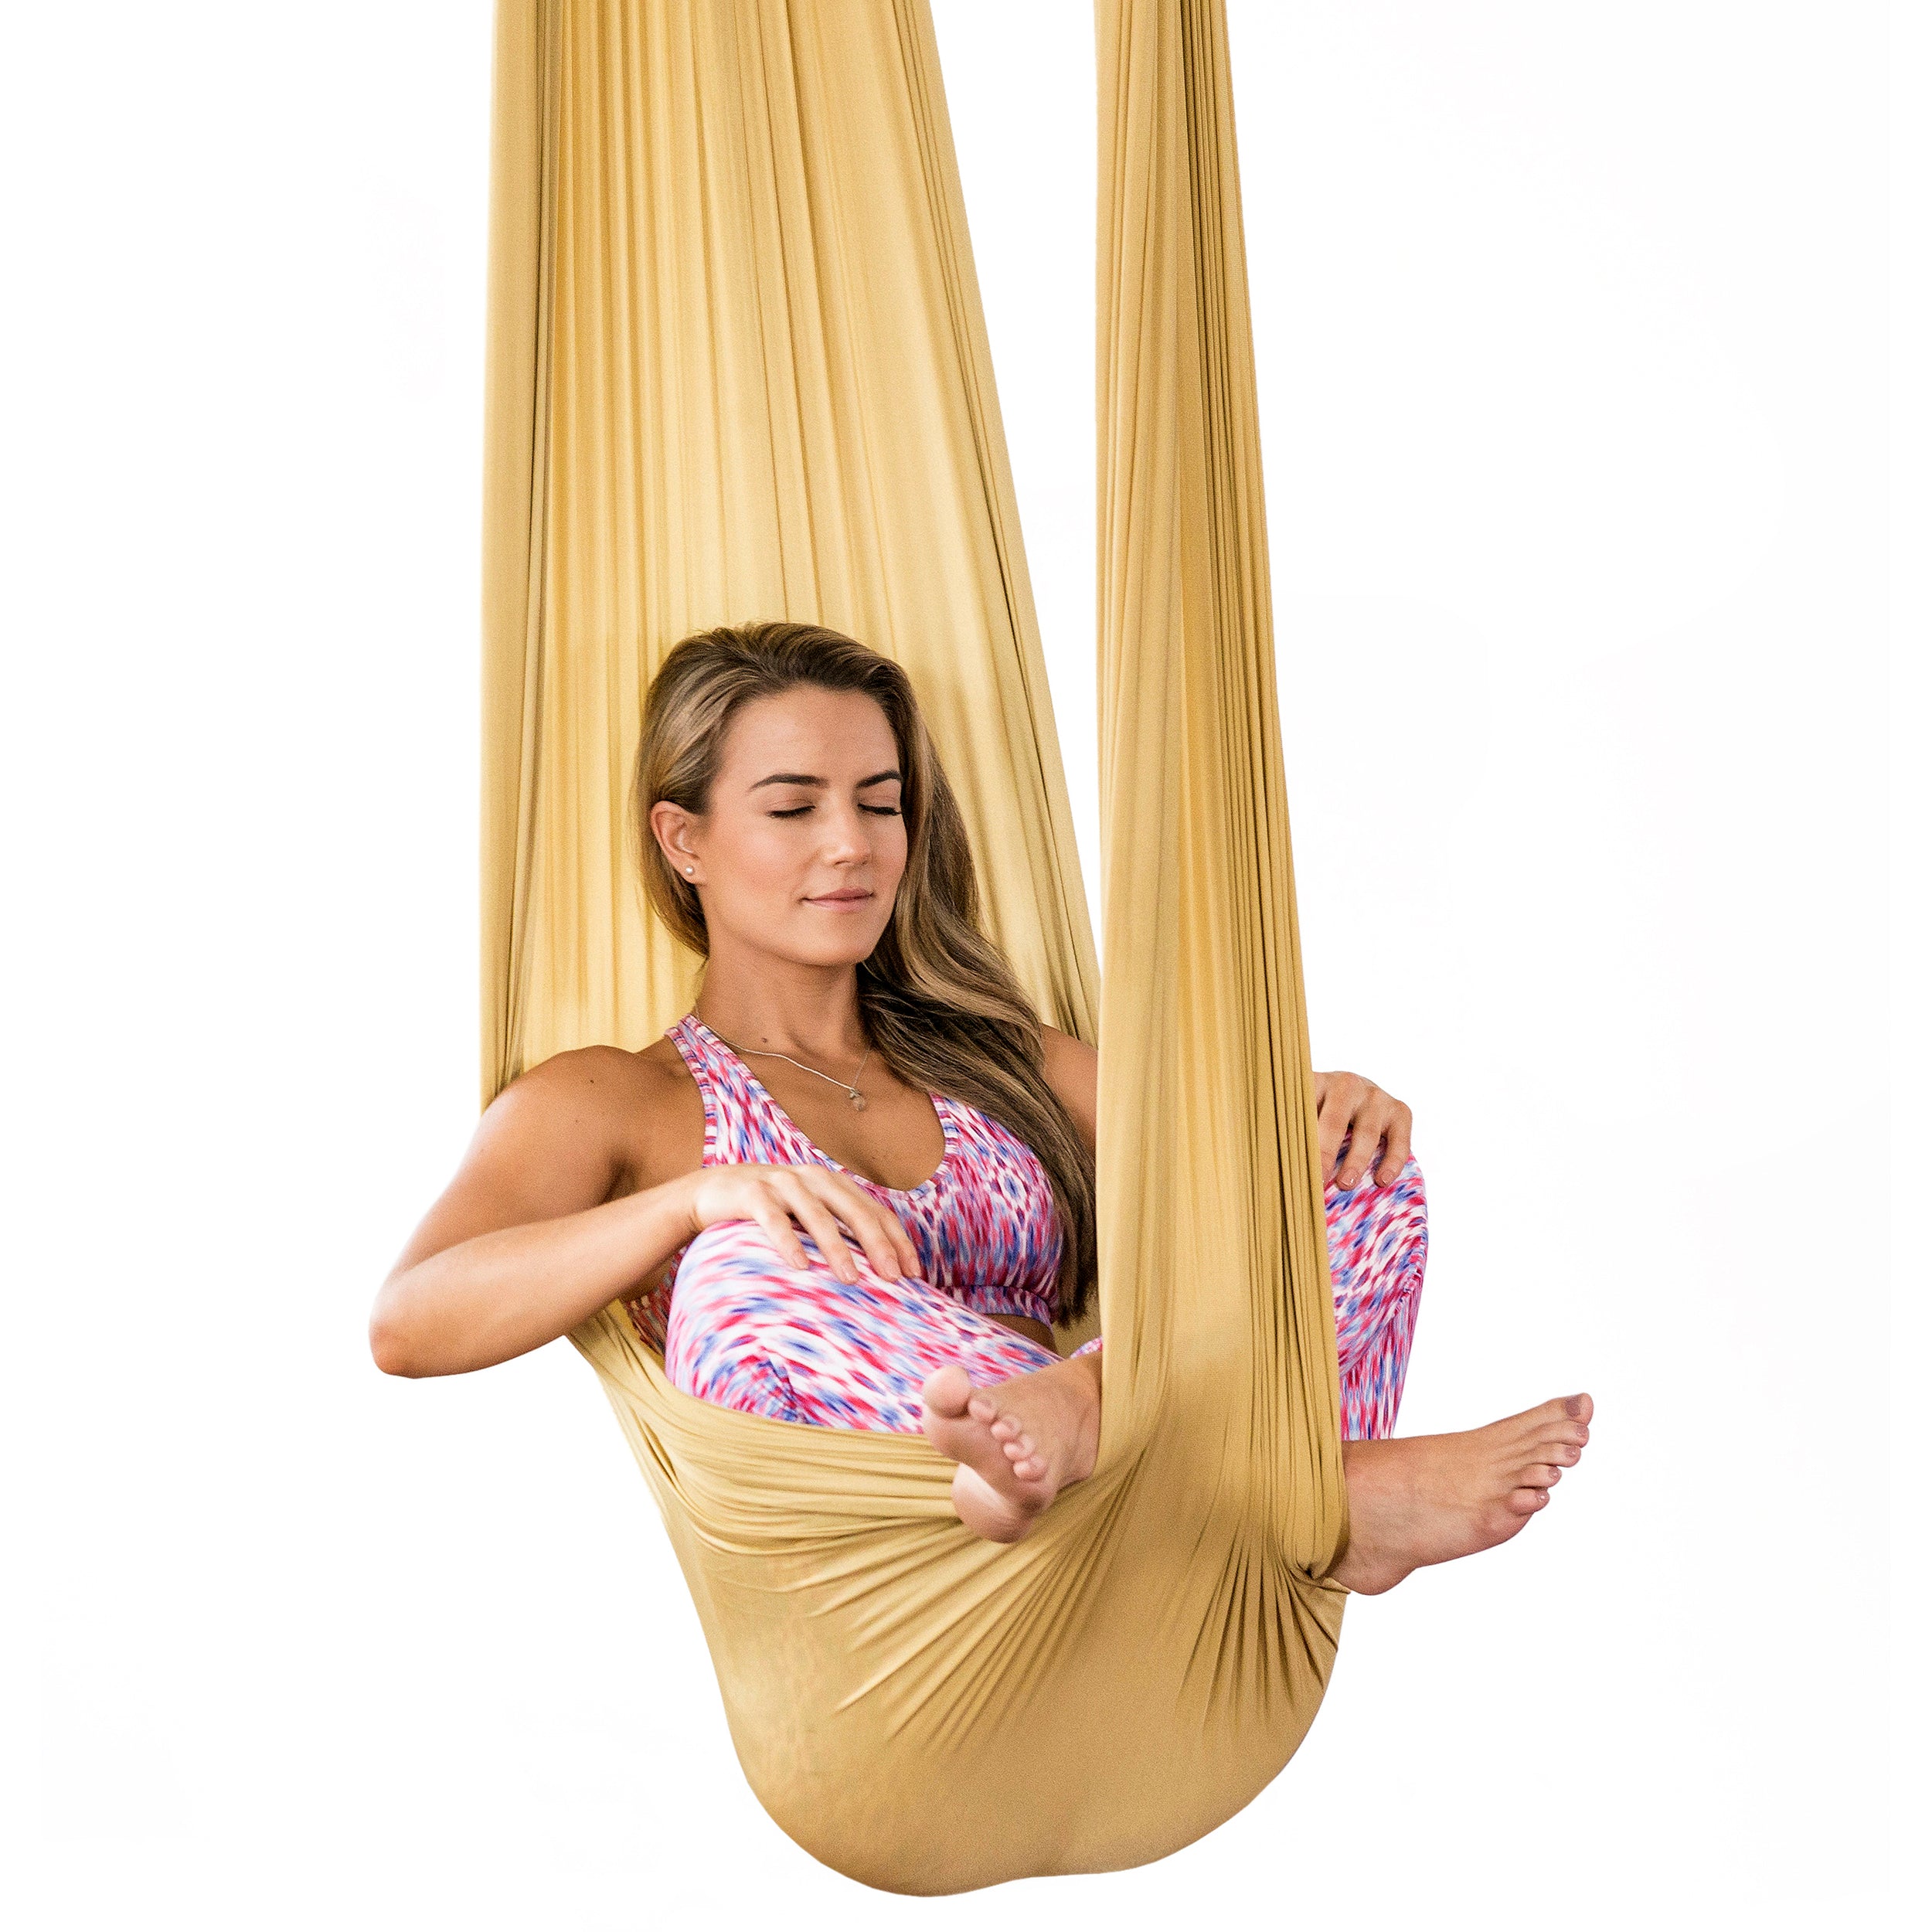 Aerial Yoga Swing (hammock) with handles - Aerial Yoga Swings & Aerial Silks  made in Europe